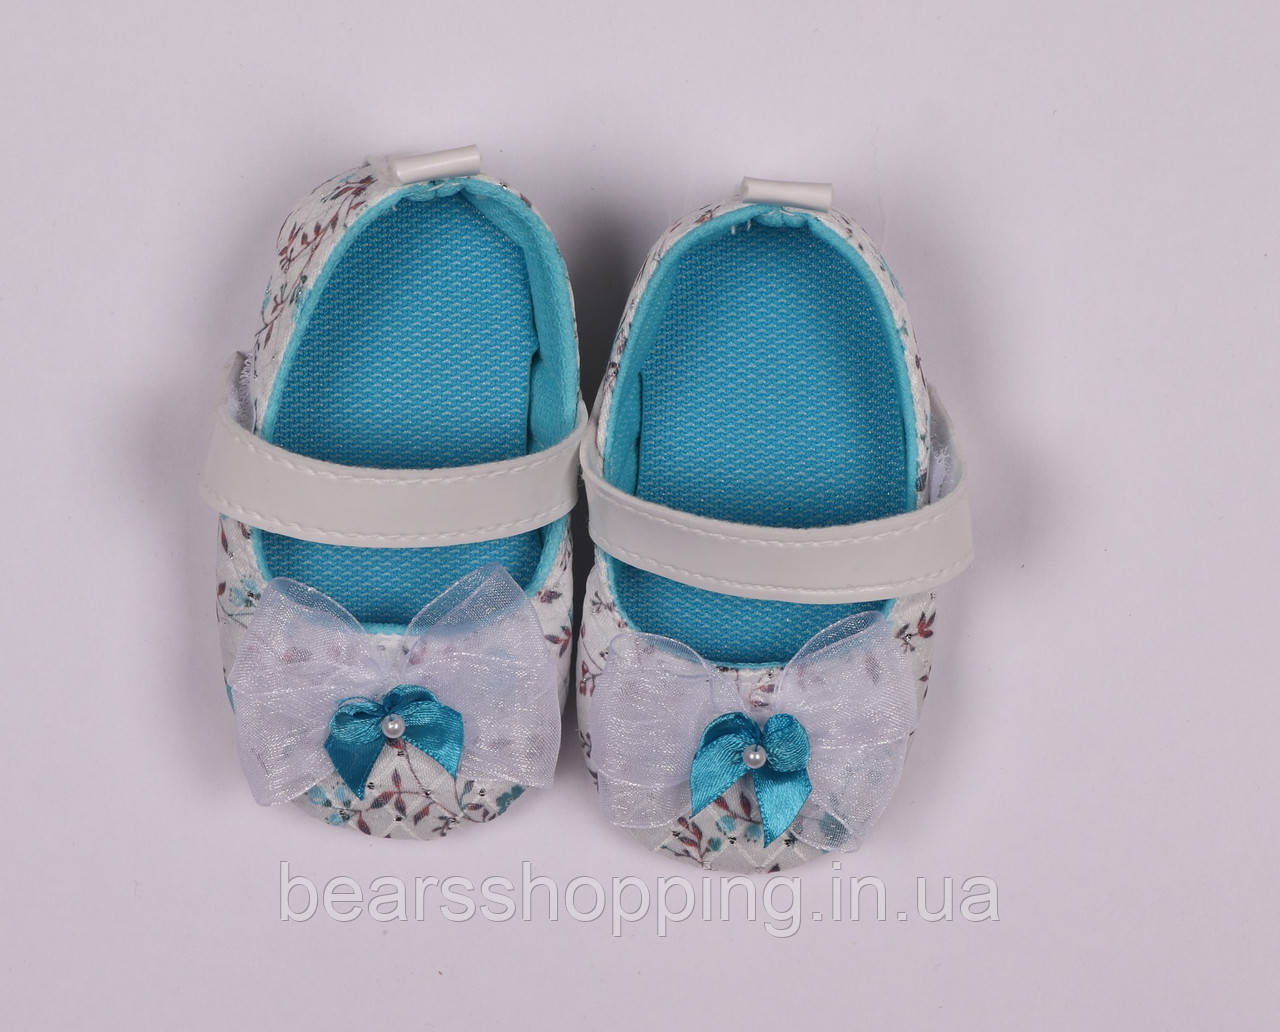 Дитяче взуття для дівчинки, туфлі, босоніжки, пінетки білі, блакитні розмір 17, 18